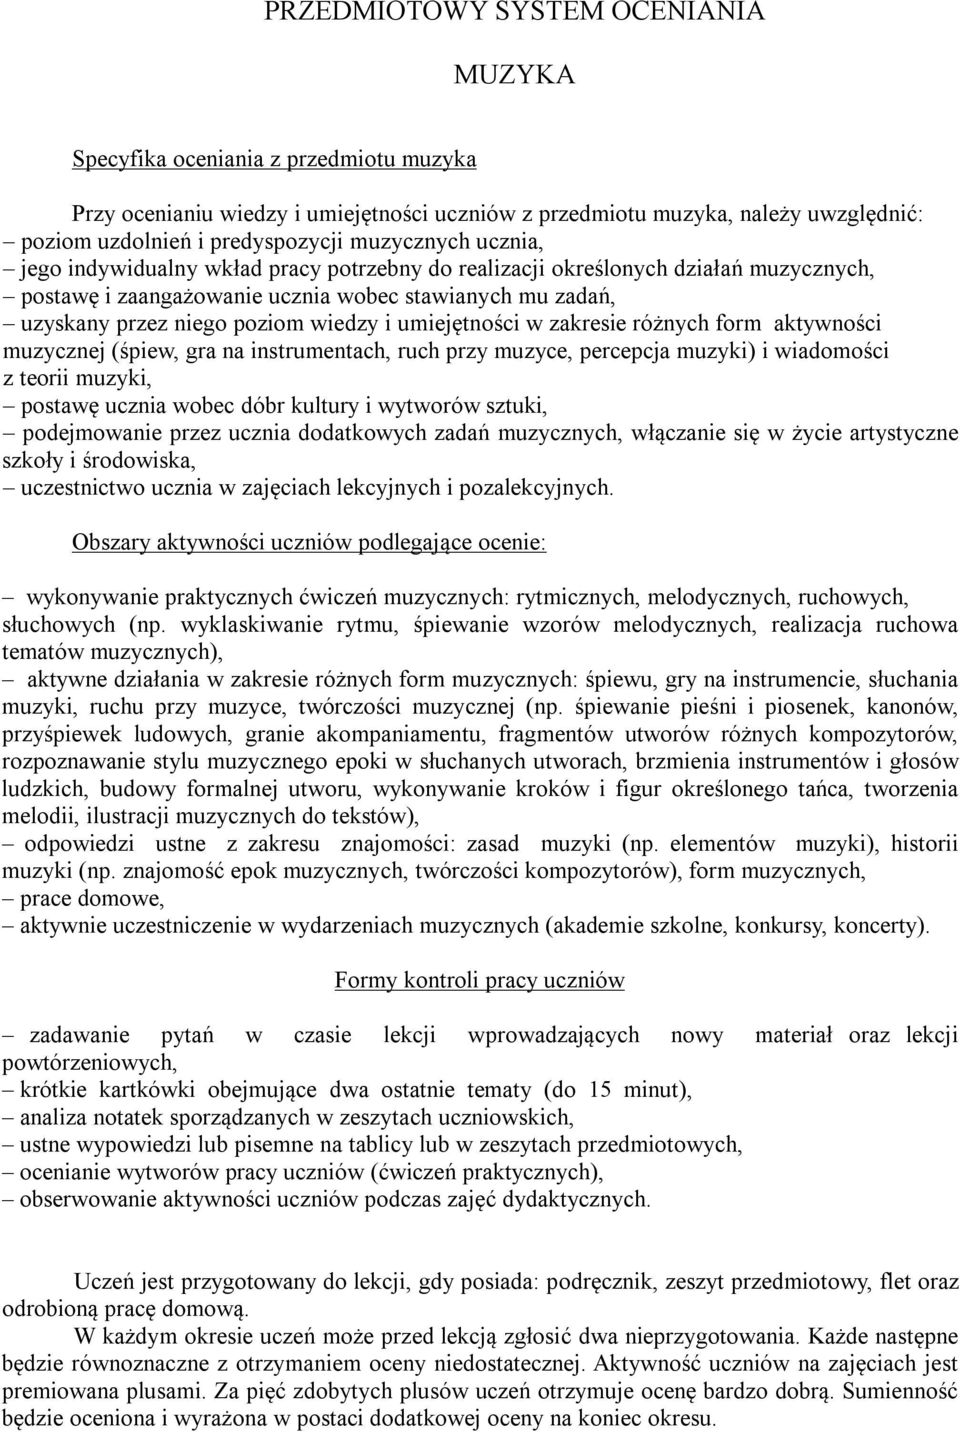 PRZEDMIOTOWY SYSTEM OCENIANIA MUZYKA - PDF Free Download